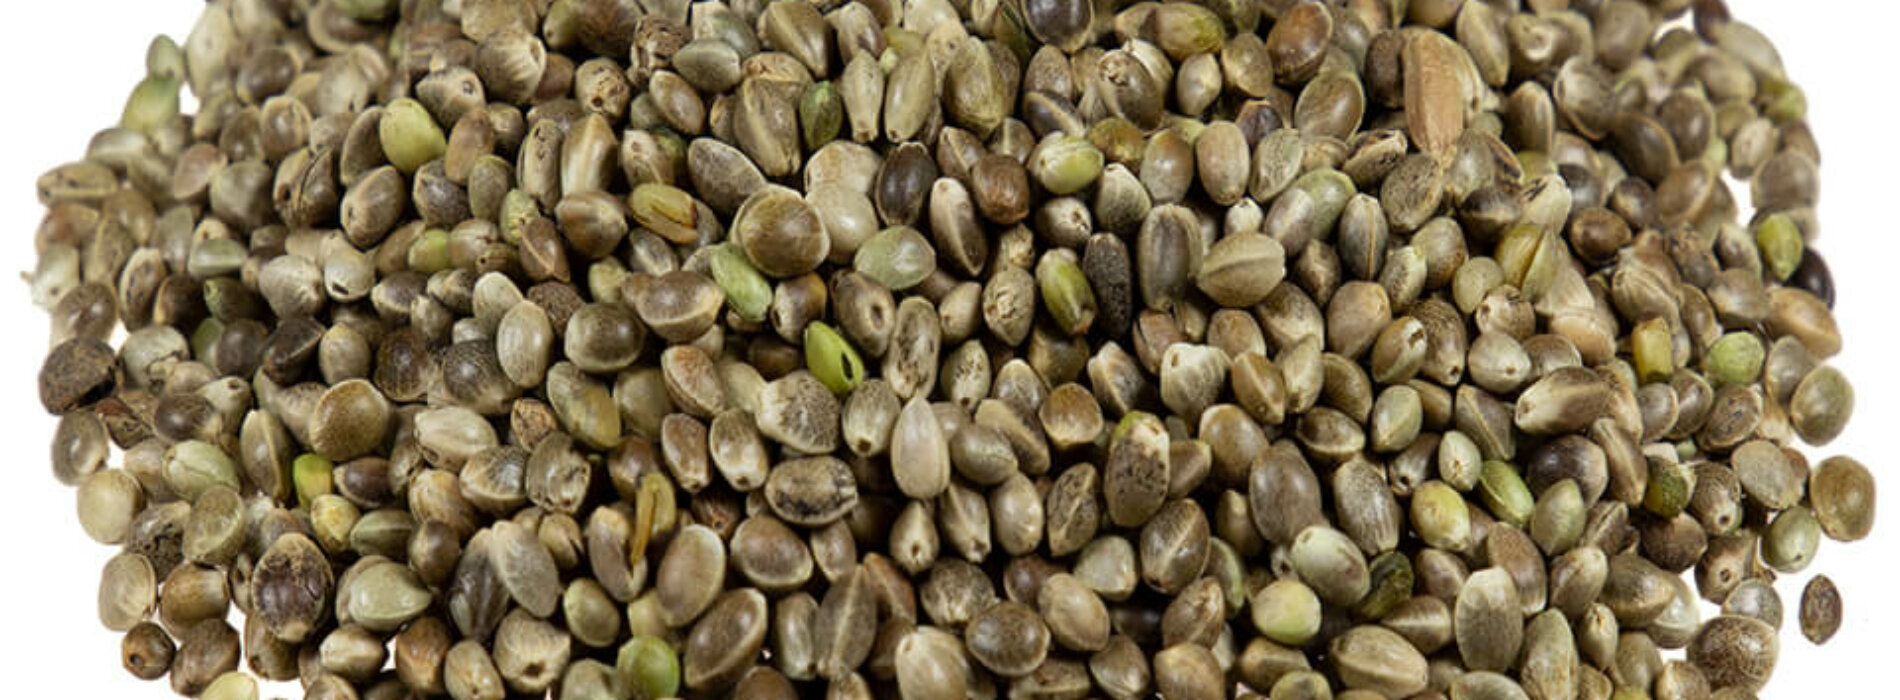 Wszystko co powinniście wiedzieć o nasionach Sweet Seeds